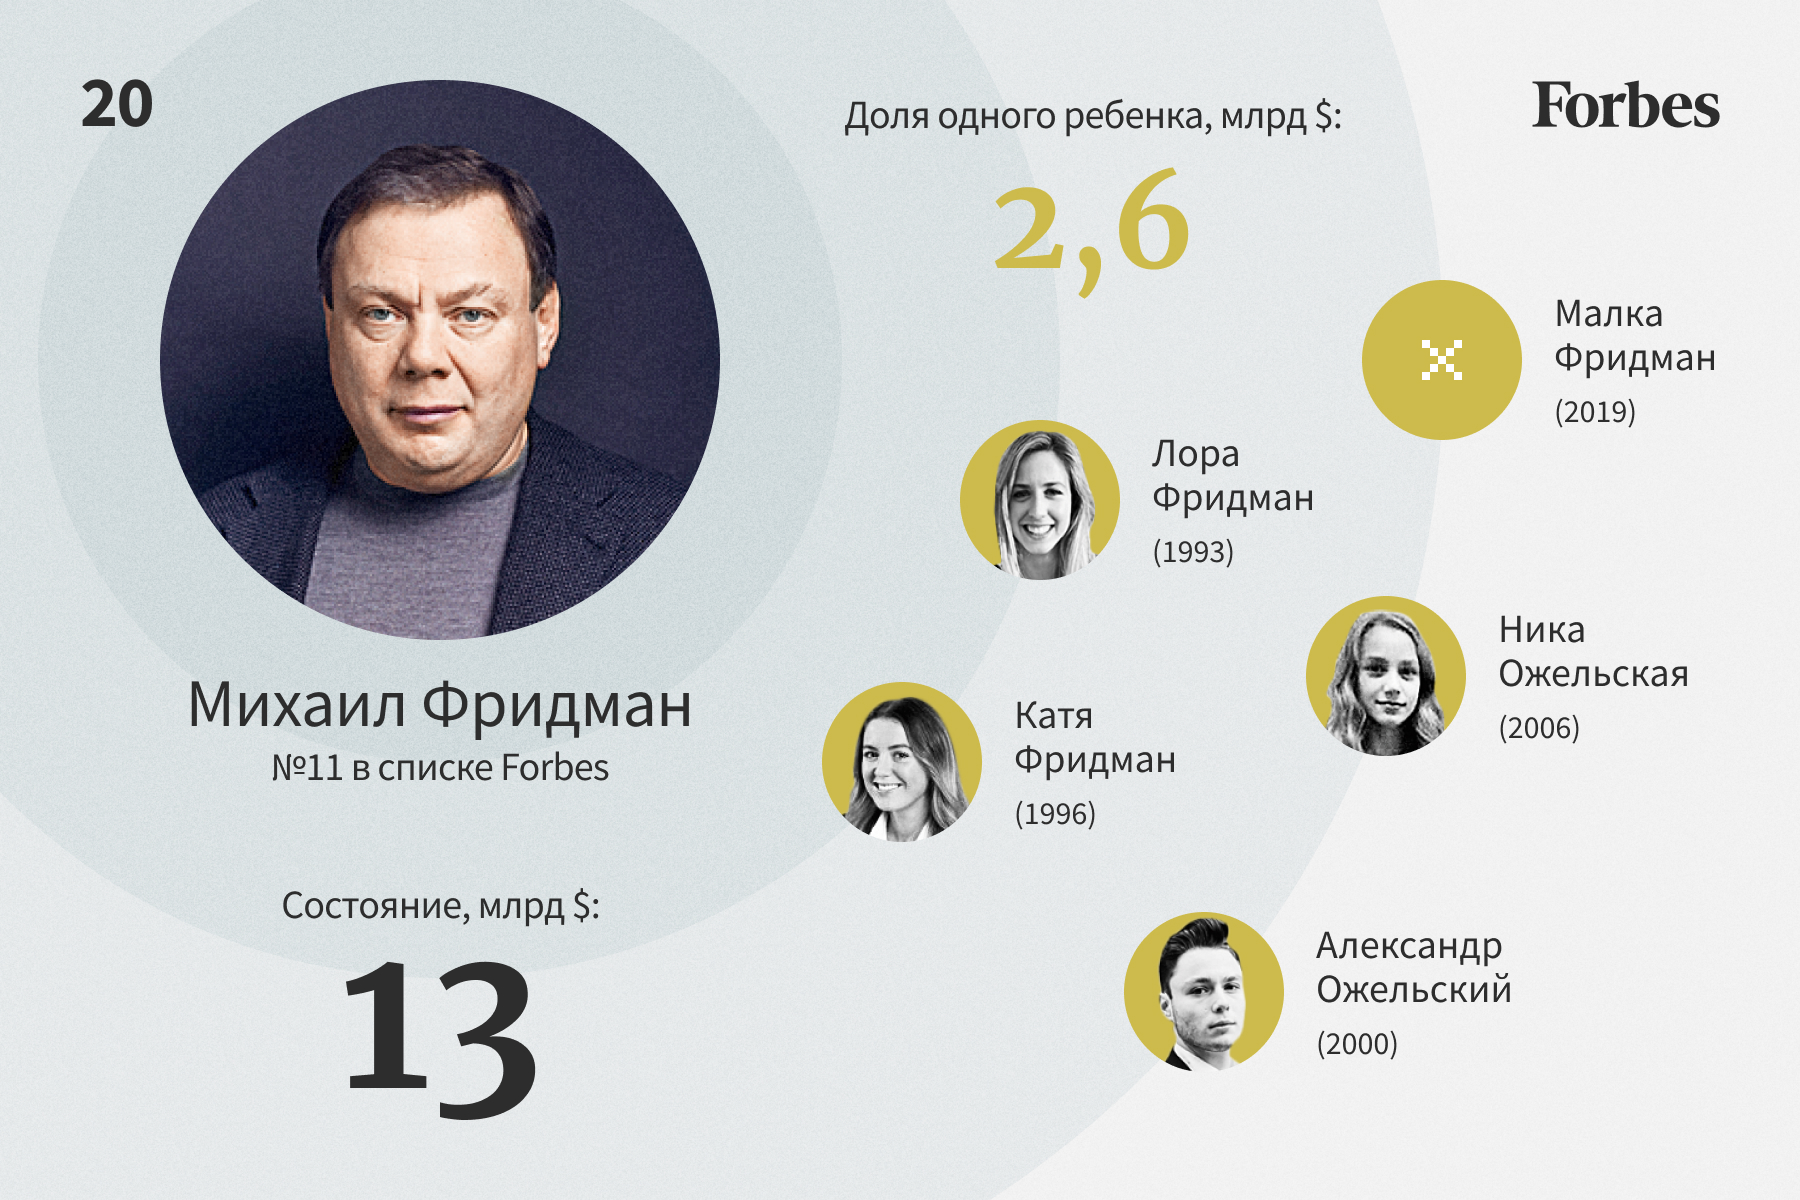 Богатейшие наследники российских миллиардеров — 2022. Рейтинг Forbes |  Forbes.ru